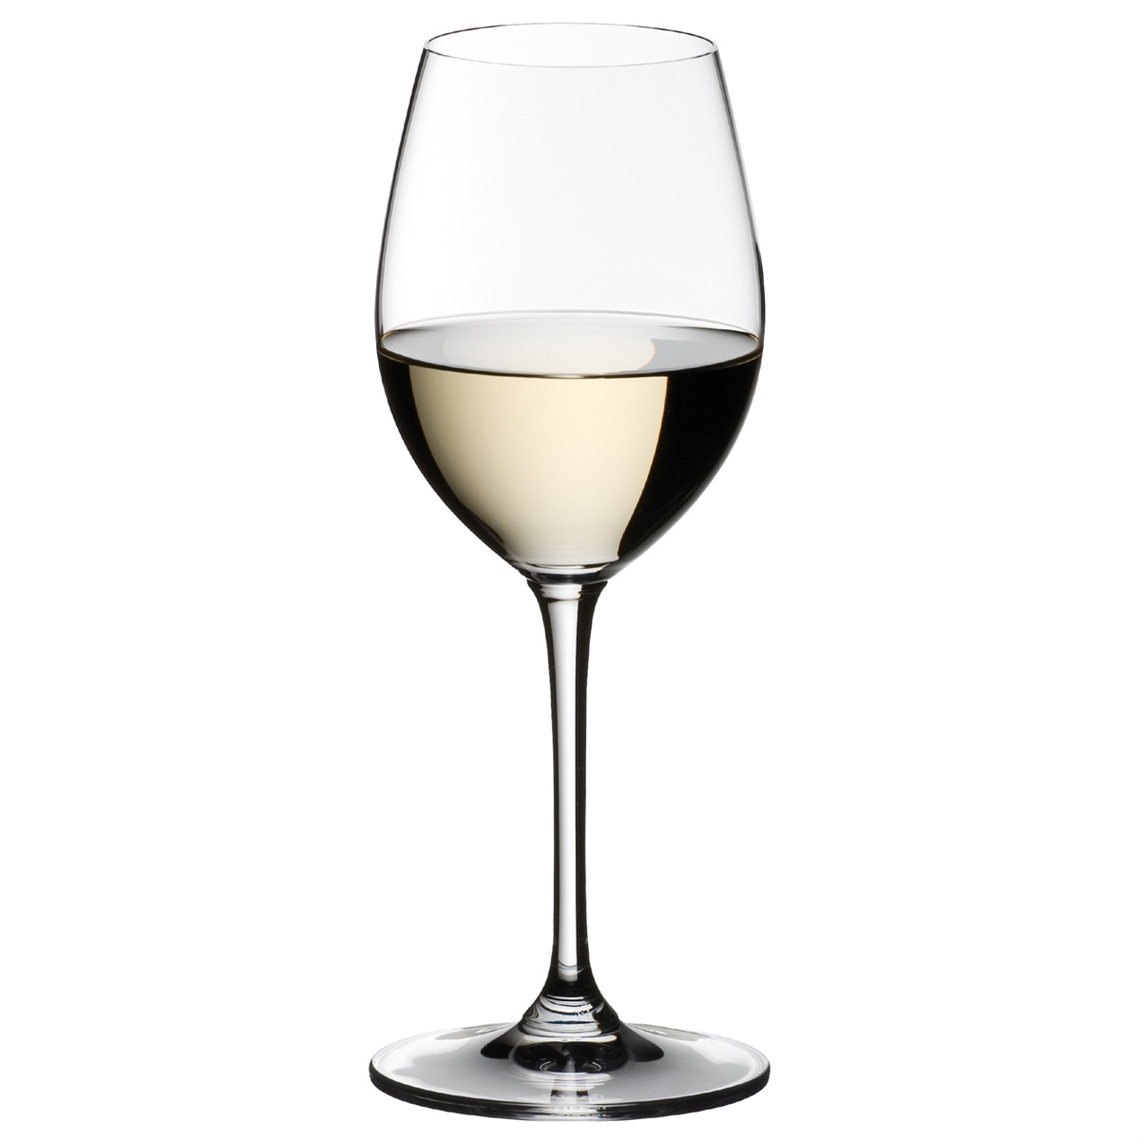 View more spirit glasses from our Dessert Wine Glasses range